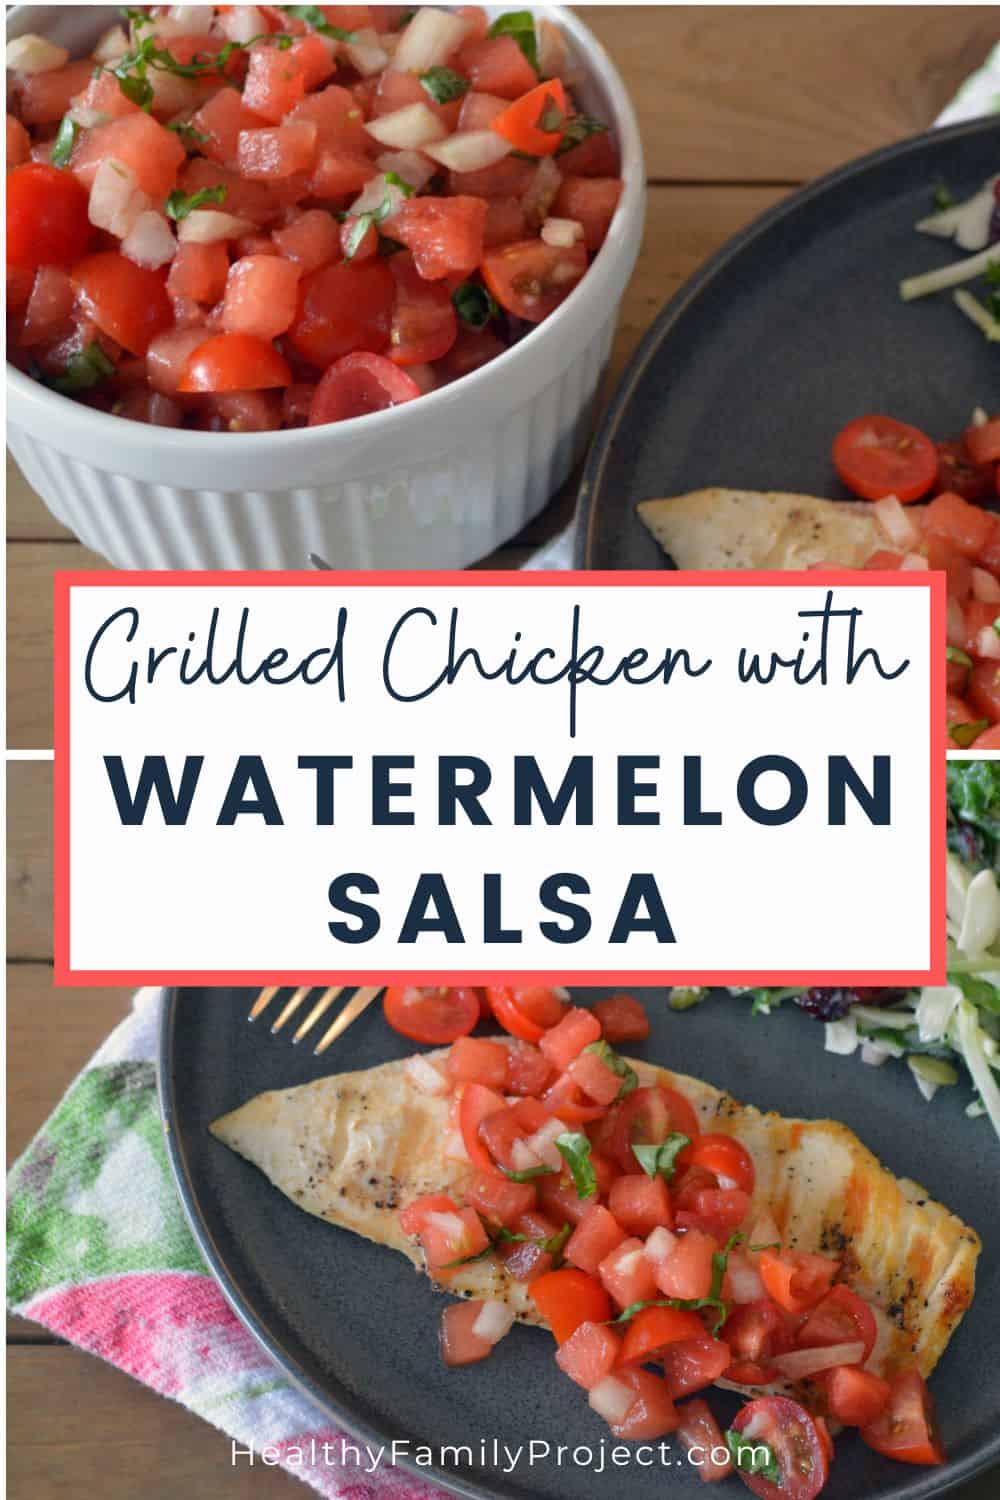 Watermelon Salsa over grilled chicken 